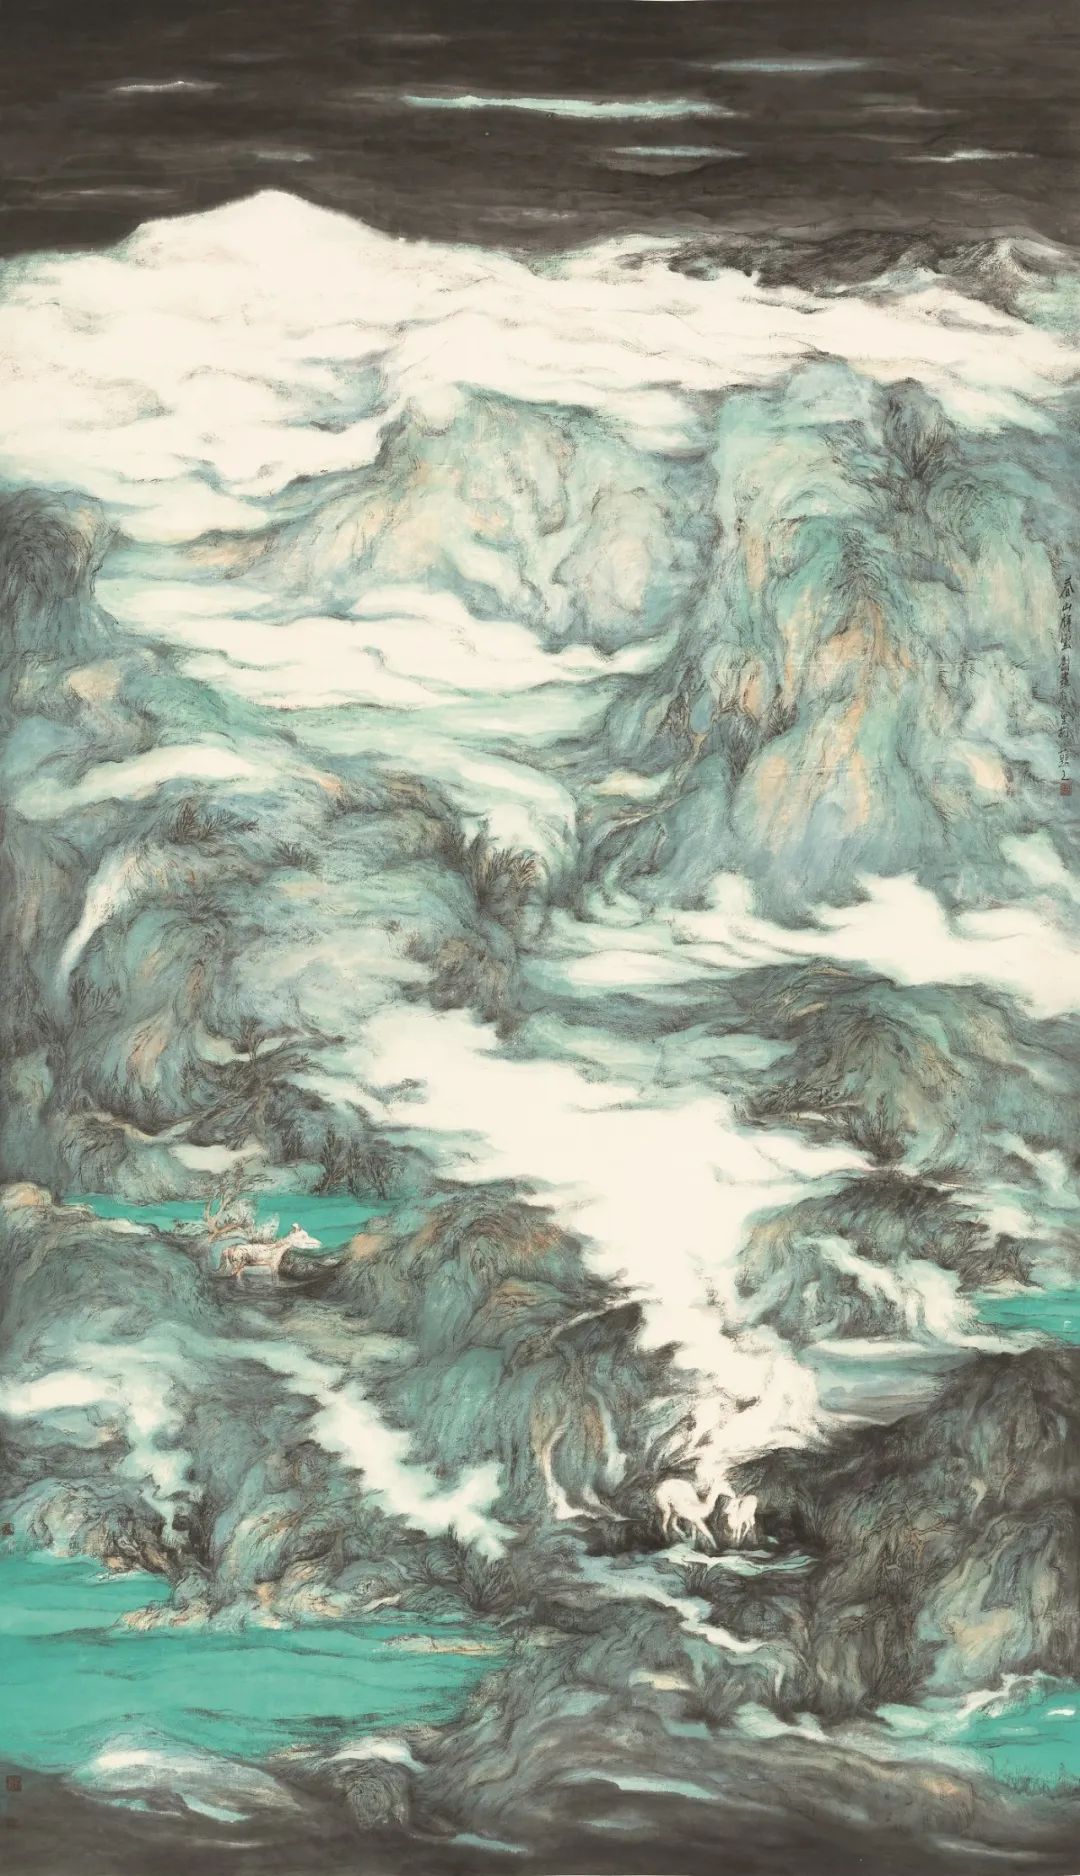 厚德载物  浩然大气——“少壮派”画家刘明作品中的时代精神印记